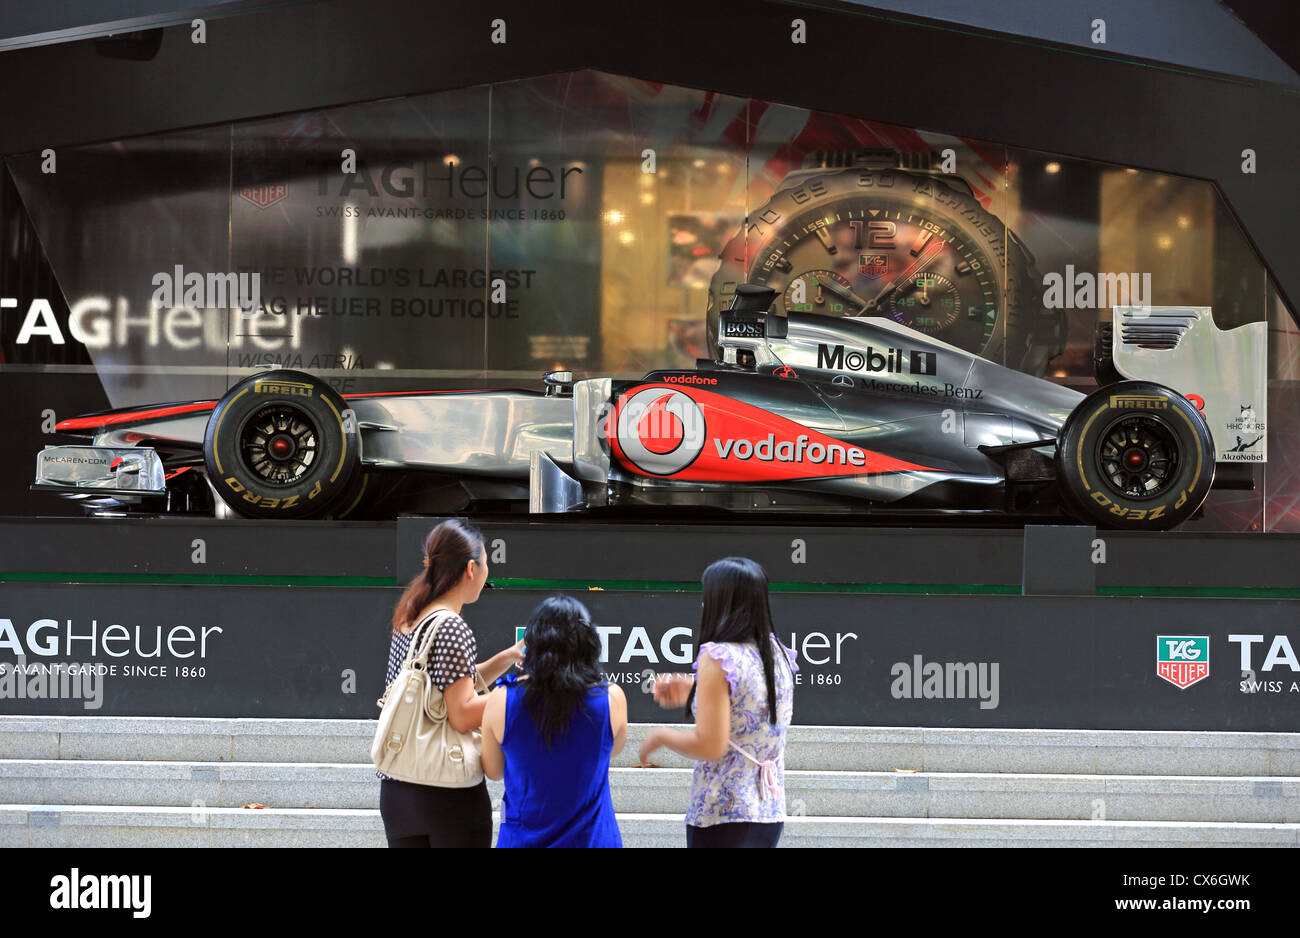 Donna ammirando Jenson Button della McLaren Mercedes Formula One racing car sul display in Singapore prima del Gran Premio di Singapore. Foto Stock